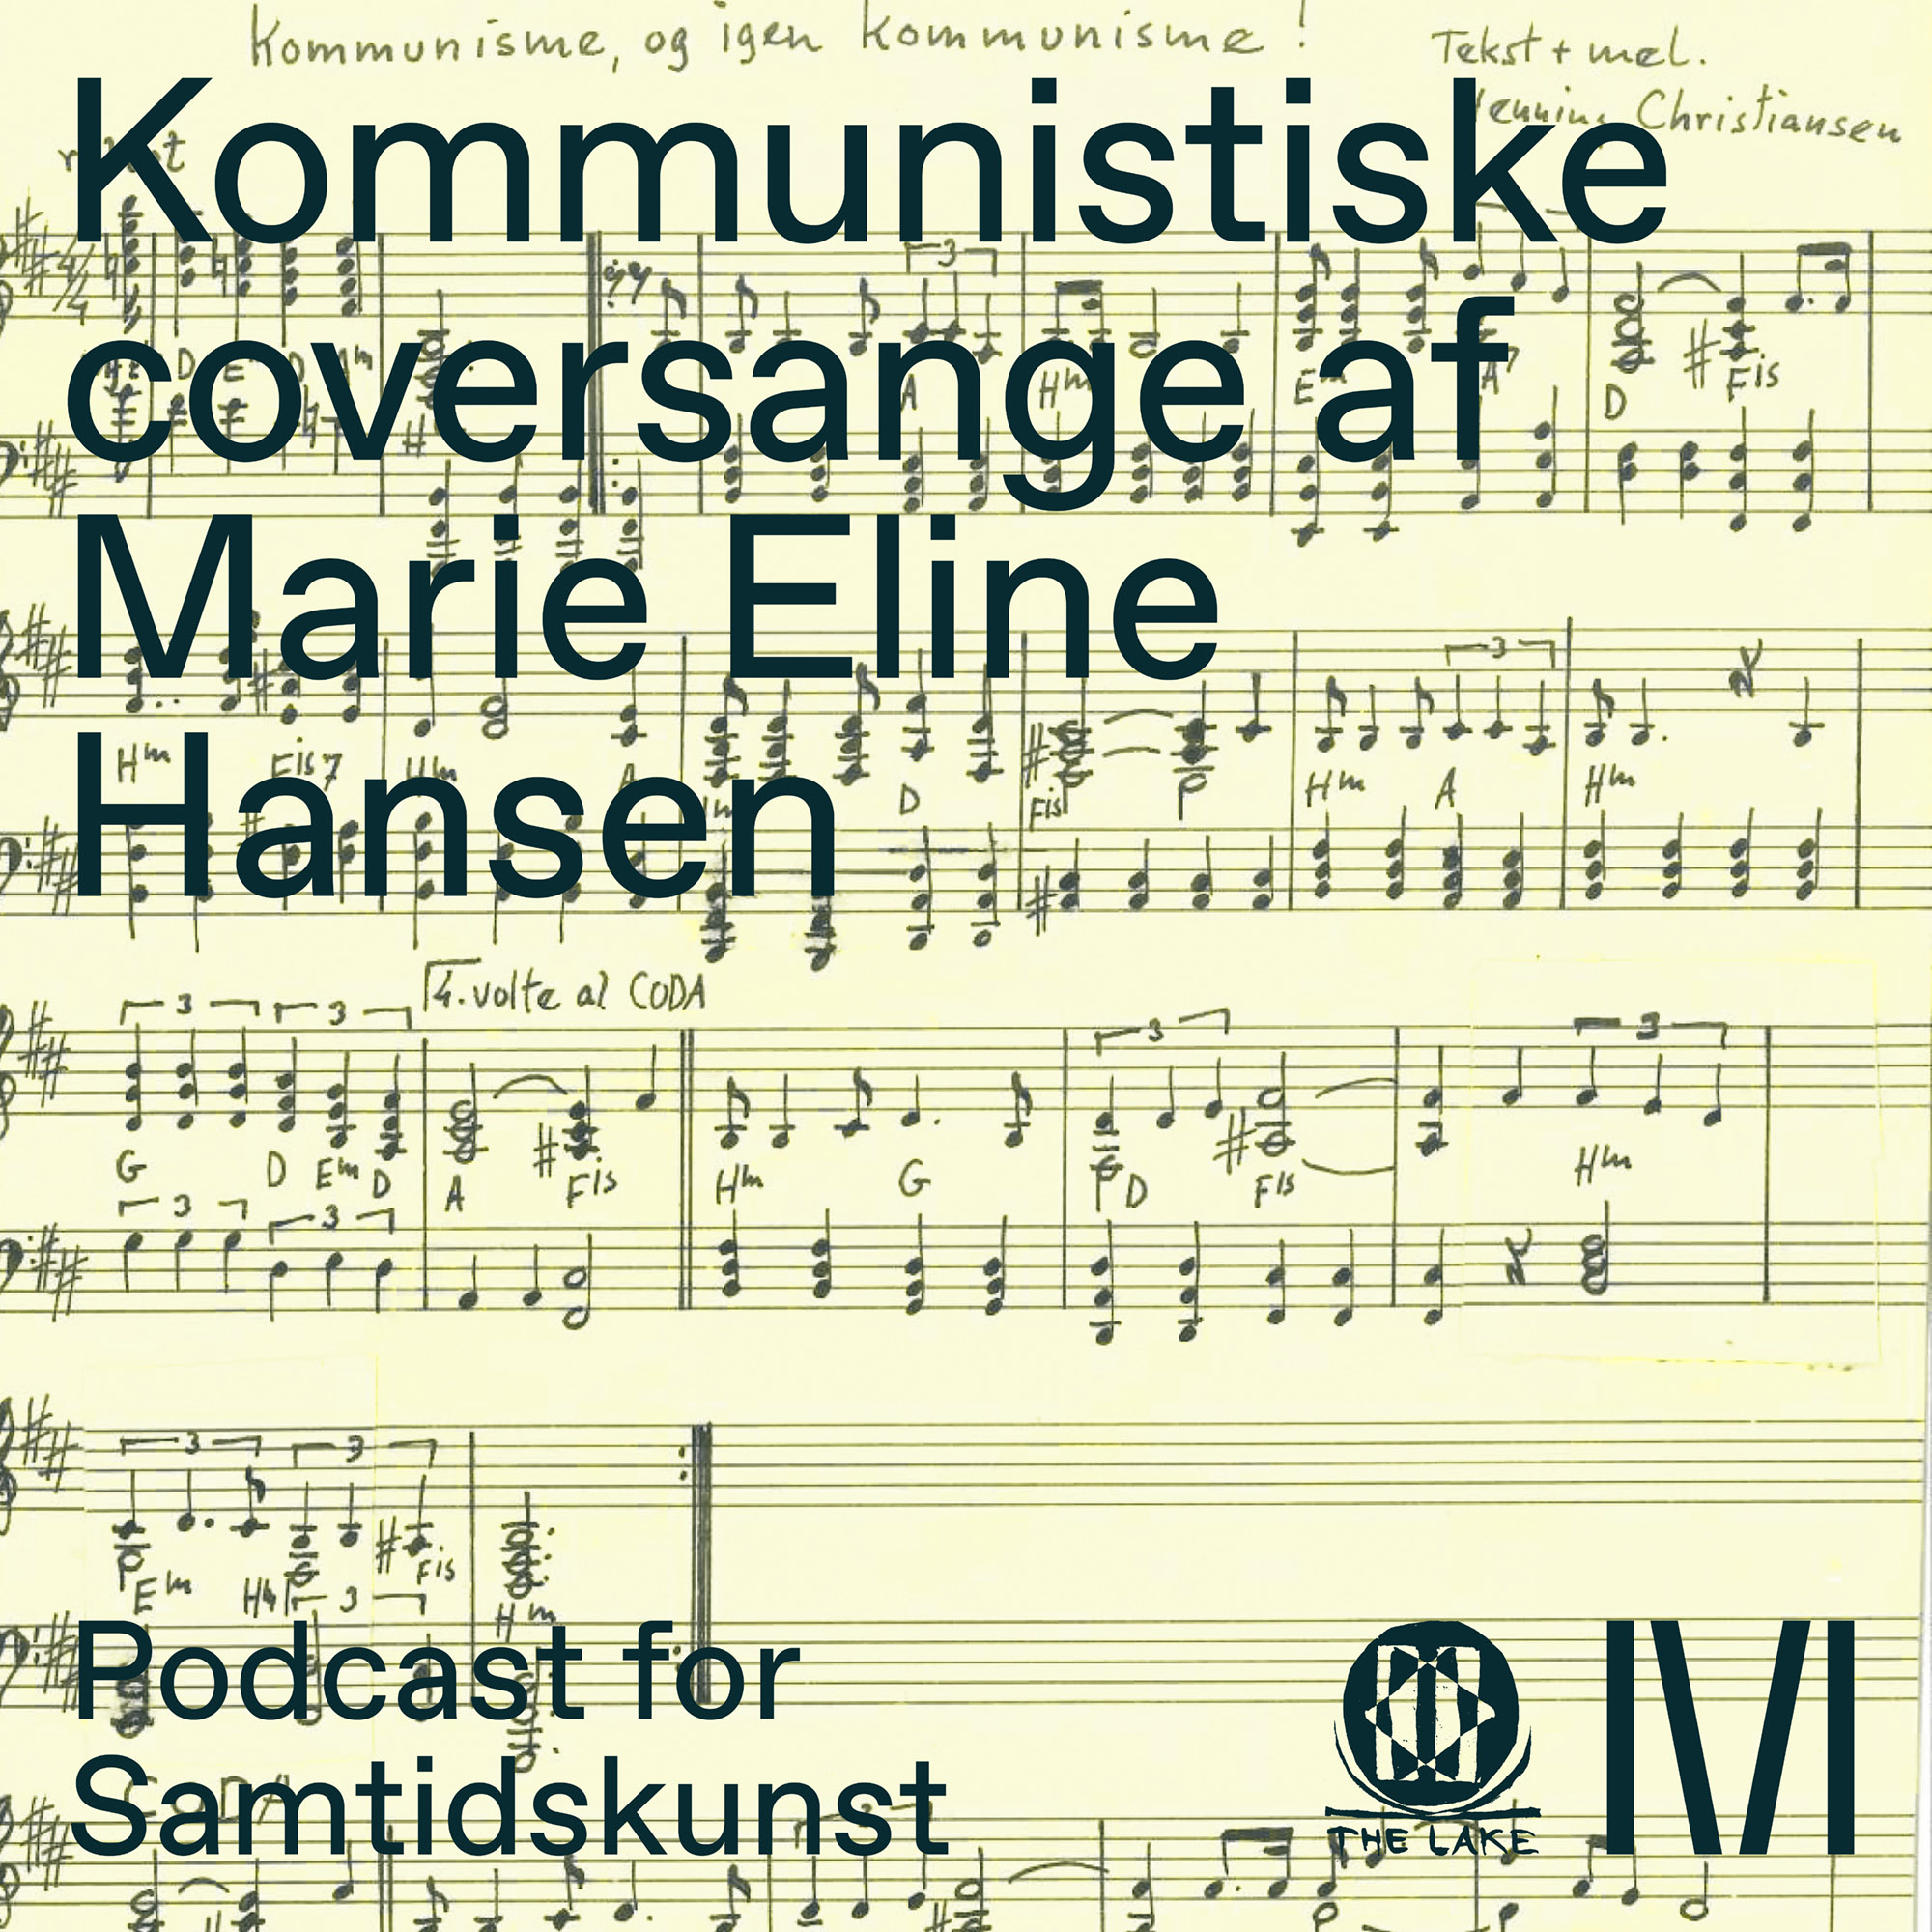 Kommunistiske coversange af Marie Eline Hansen